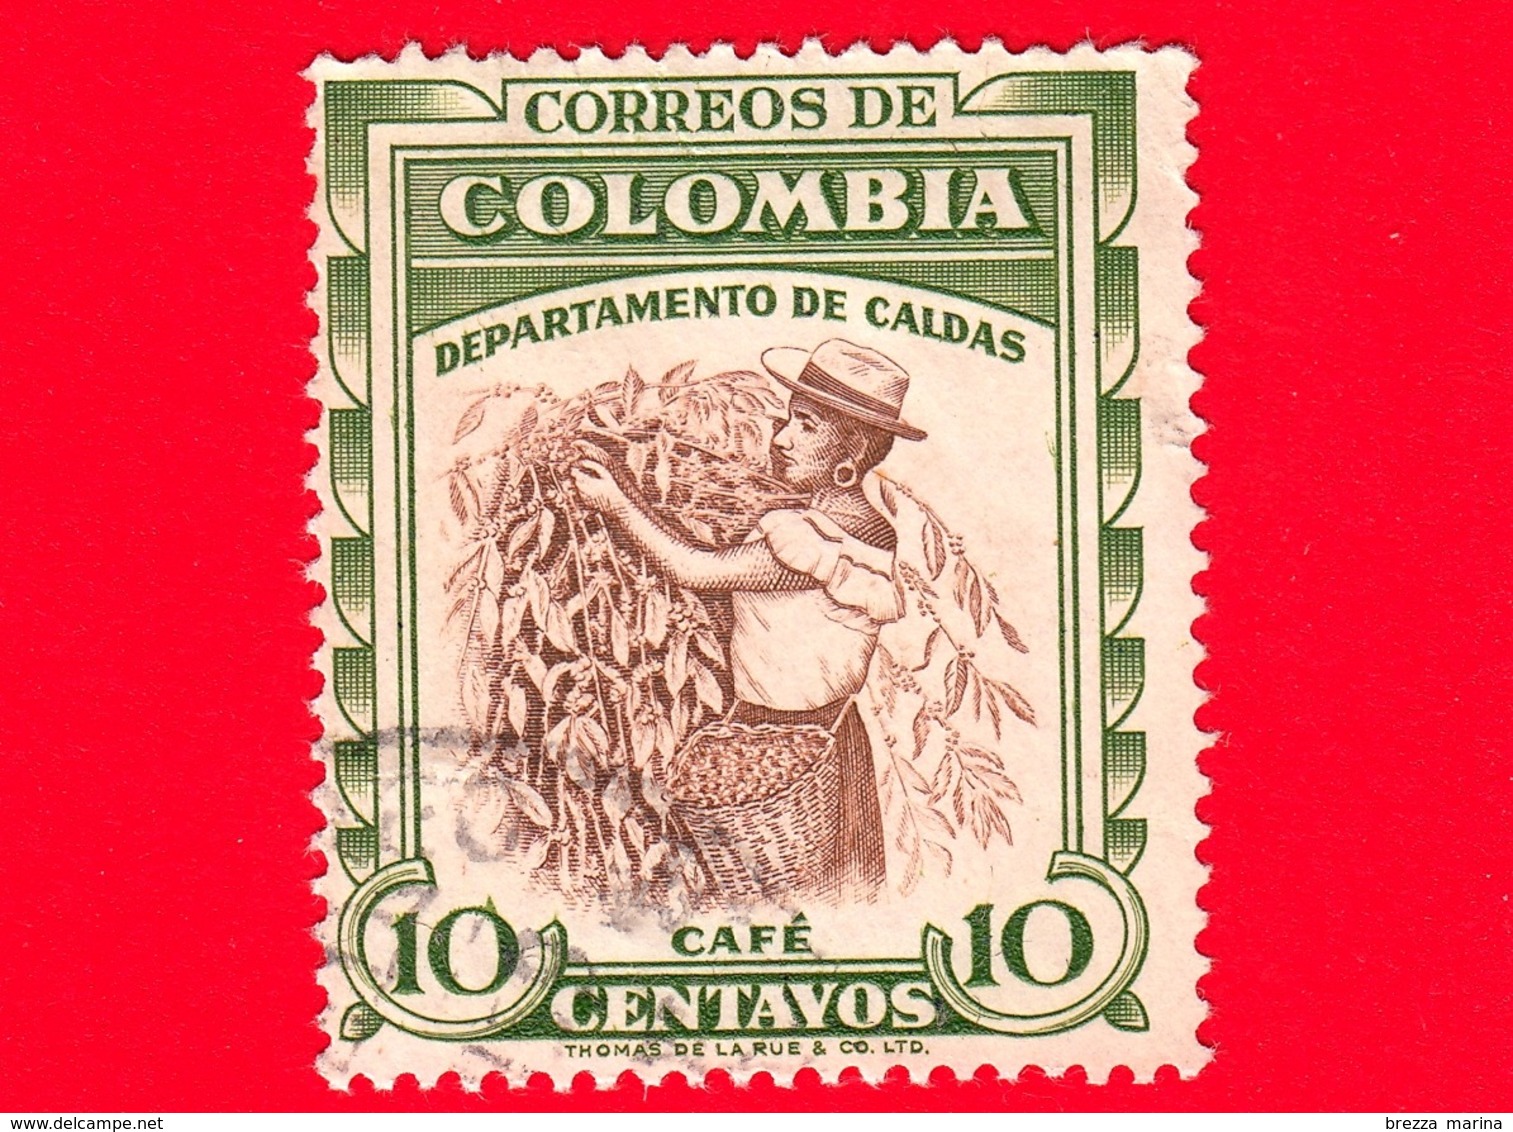 COLOMBIA - Usato -  1958 - Raccolta Del Caffè - Coffee - Café - Dipartimento Di Caldas - 10 - Colombia